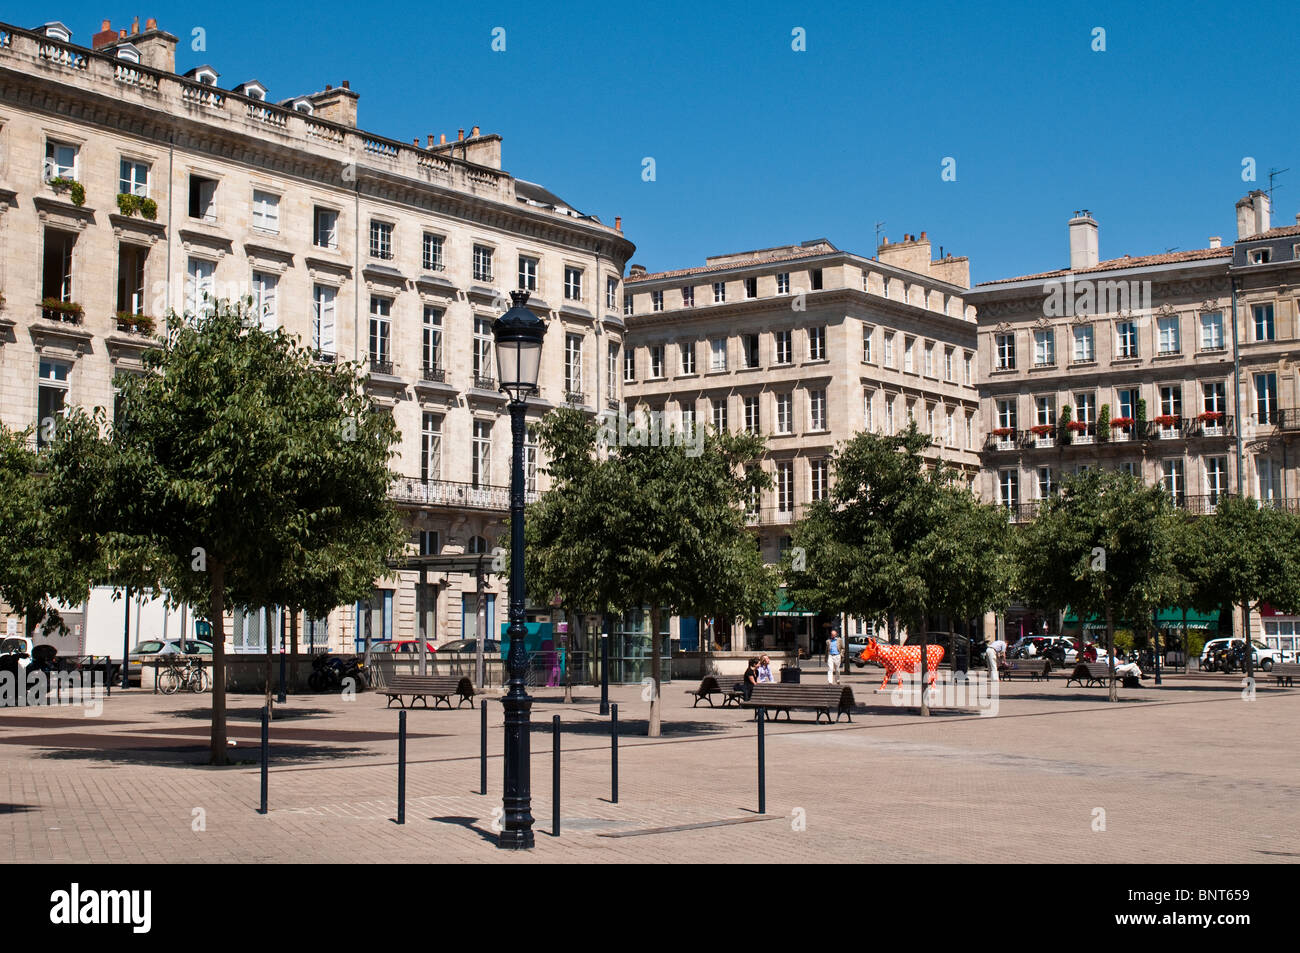 Place Jean Jaures, Bordeaux, France Stock Photo - Alamy